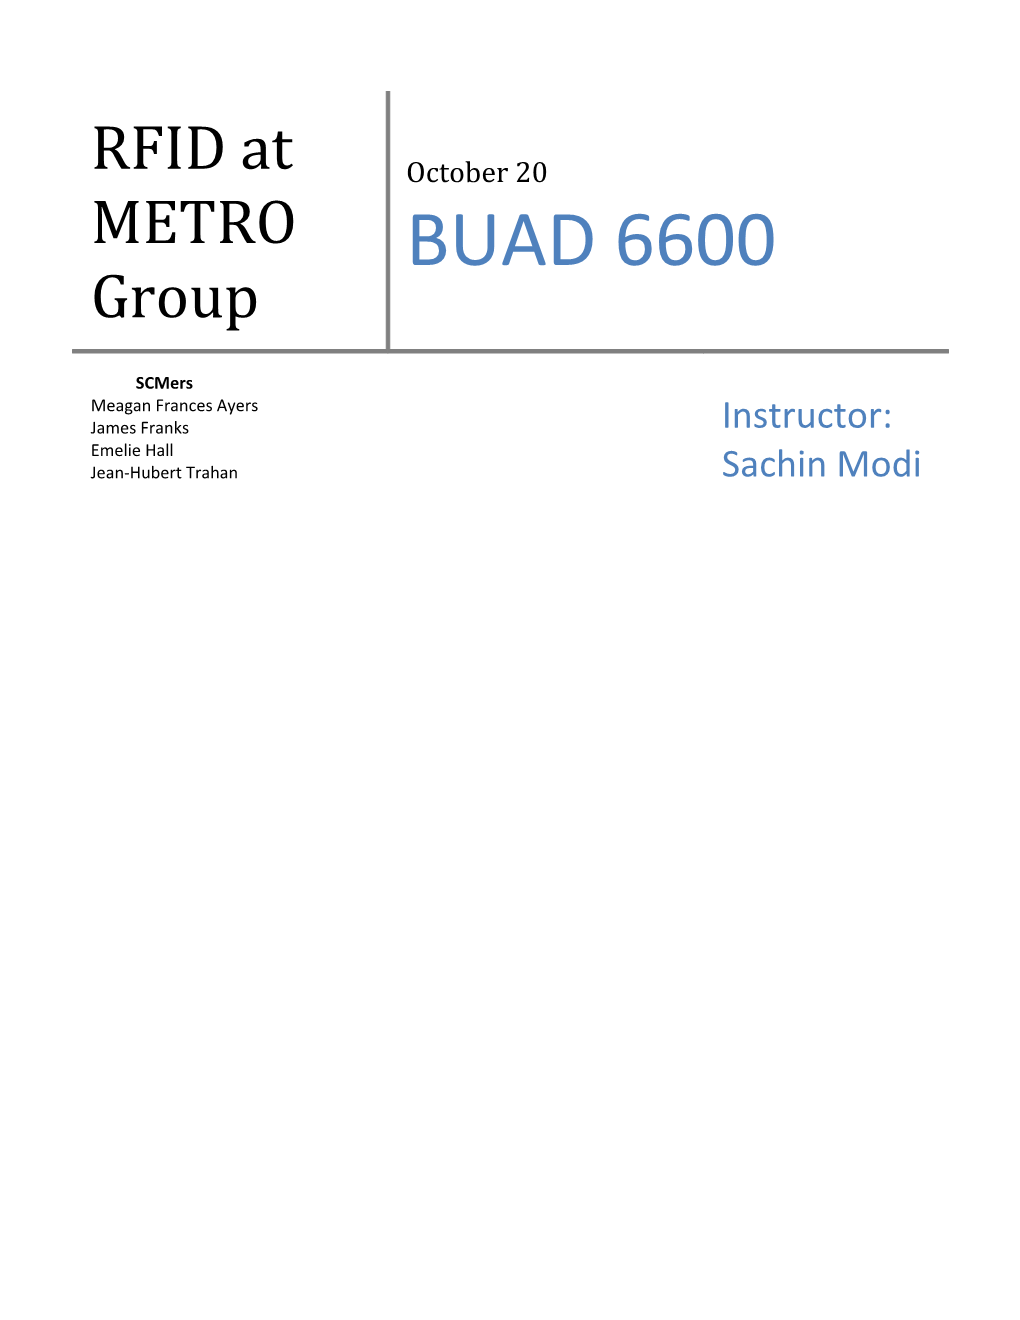 RFID at METRO Group